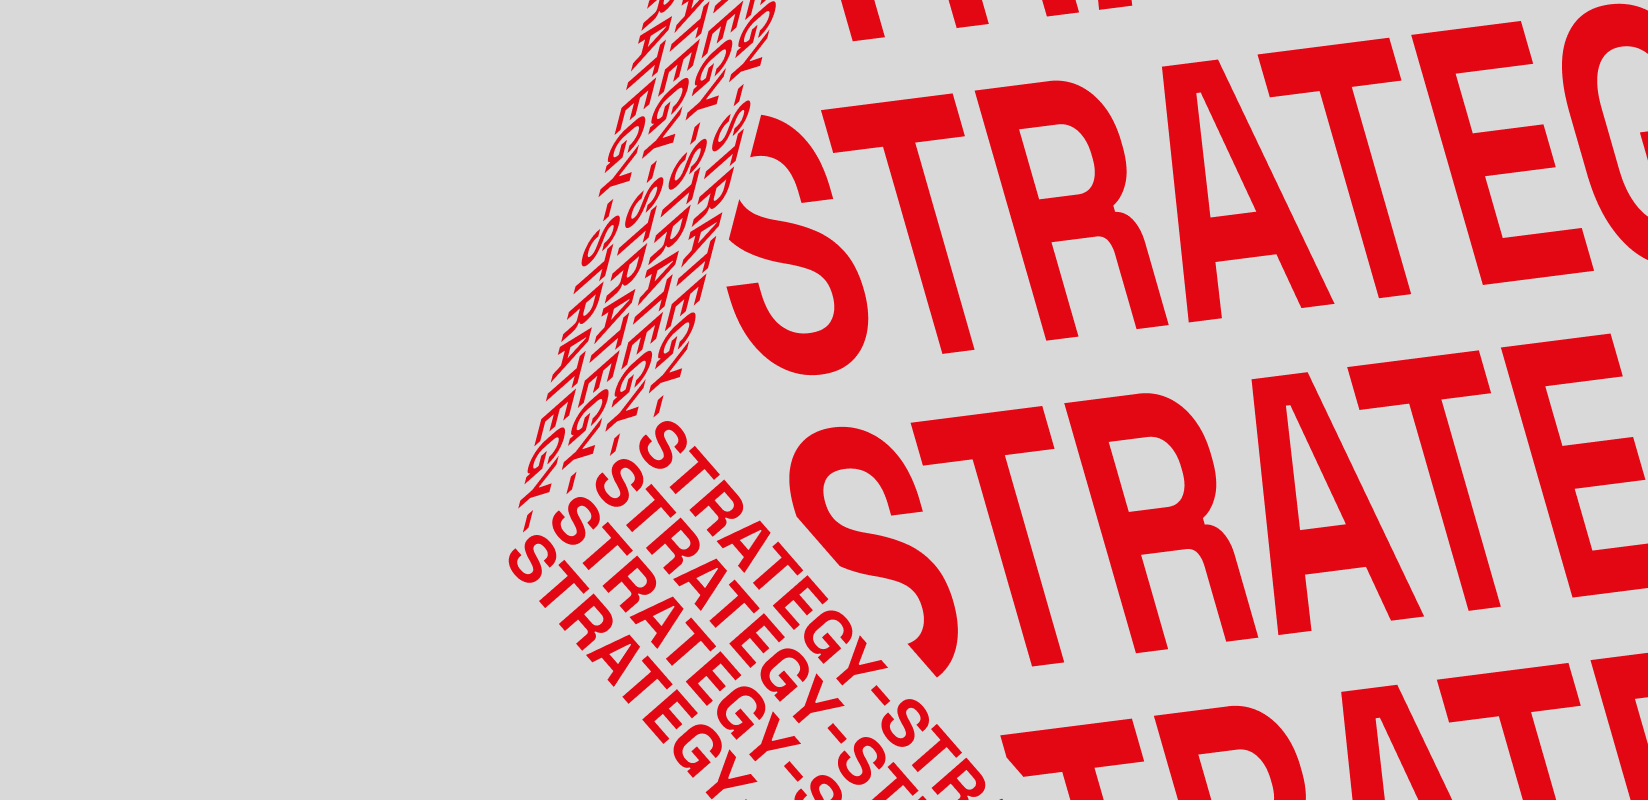 Redkiwi Strategy header image textual icon